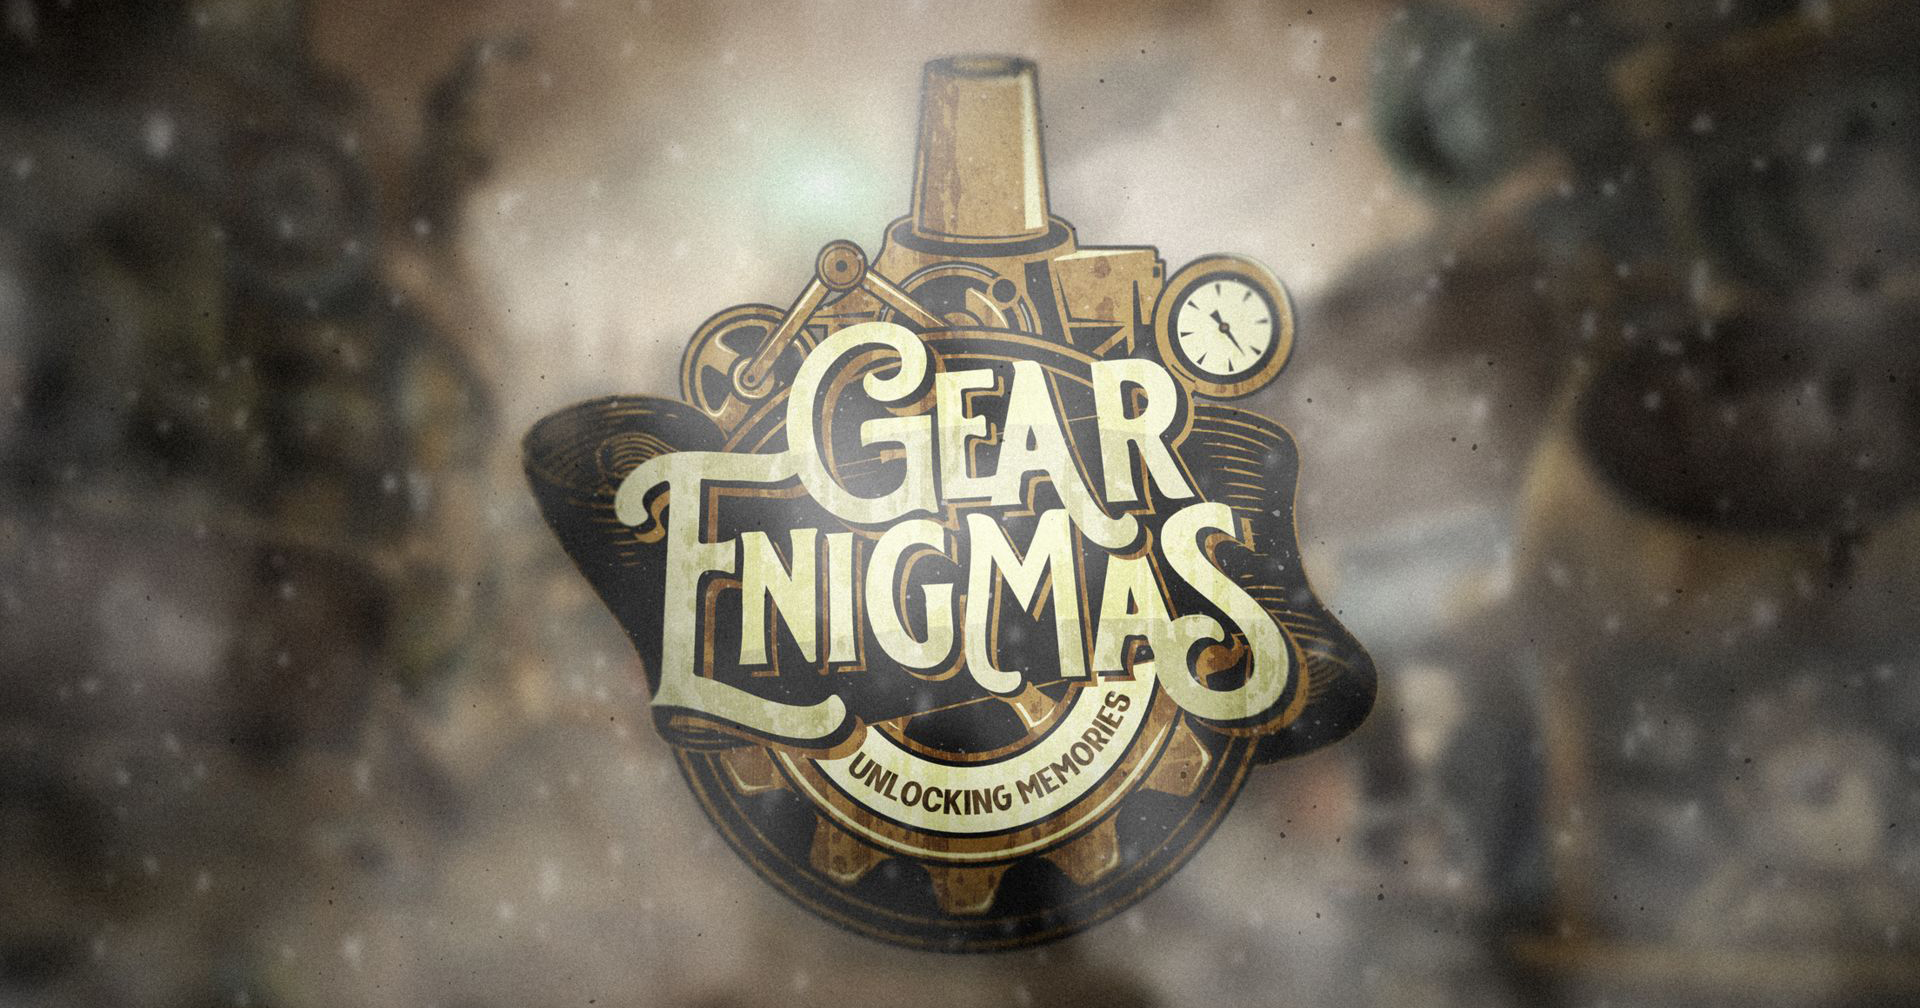 [รีวิวเกม] Gear Enigmas เกมไขปริศนา หาจุดเชื่อมโยง ในบ้านสุดแปลก